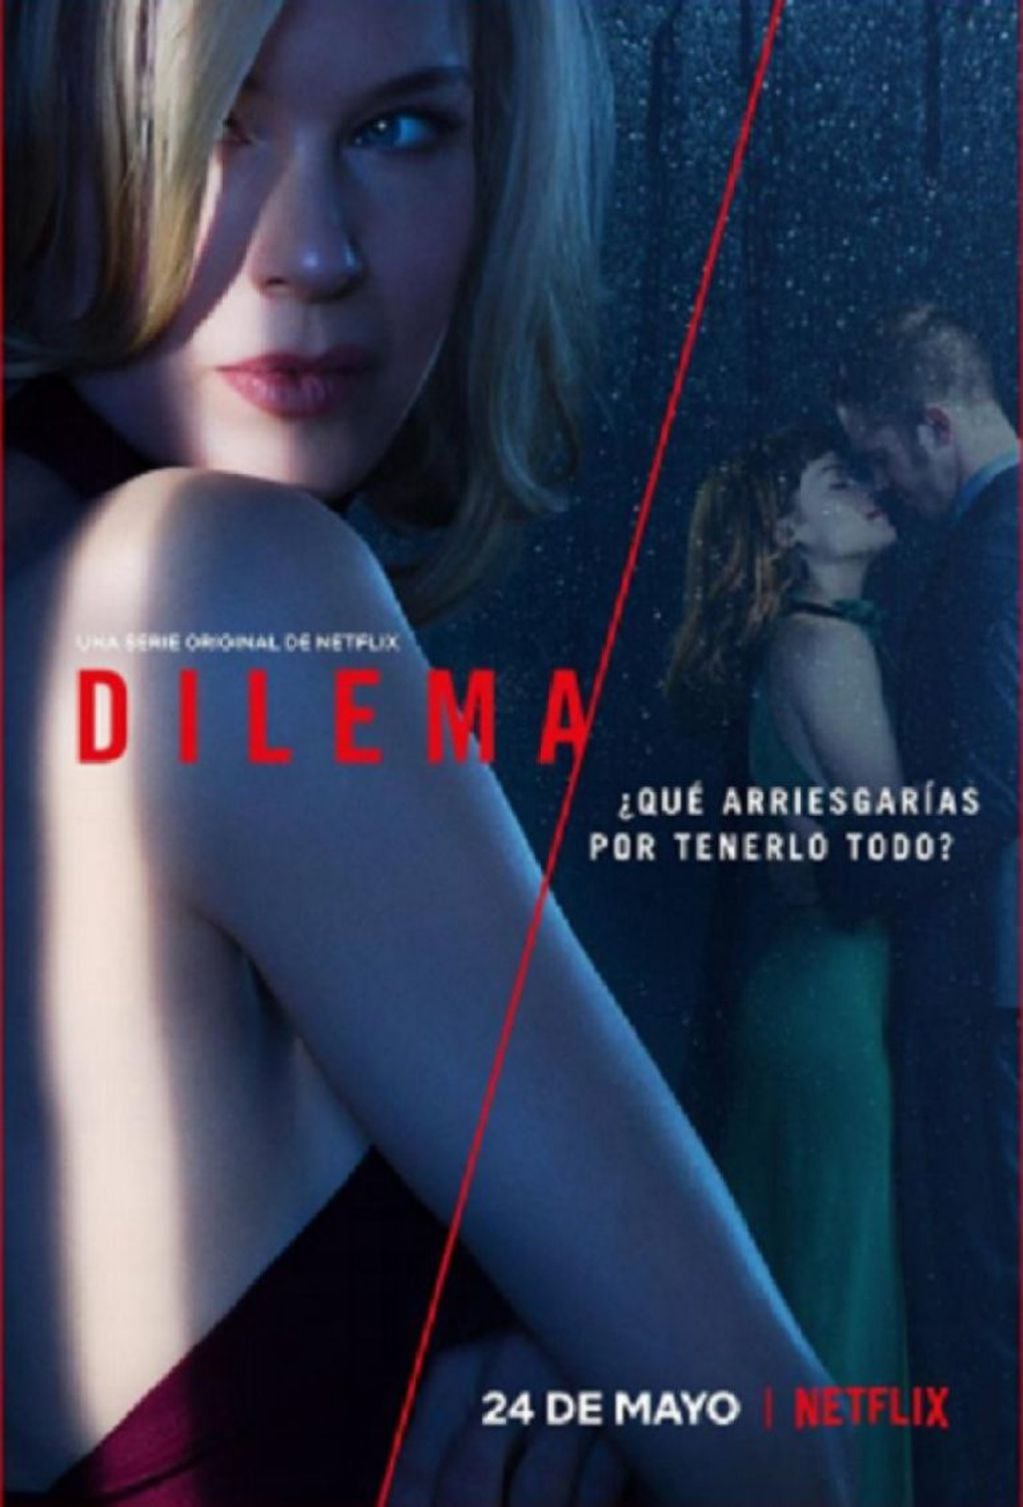 Afiche de presentación de "Dilema" la nueva serie de Netflix que tiene como protagonista a Reneé Zellweger